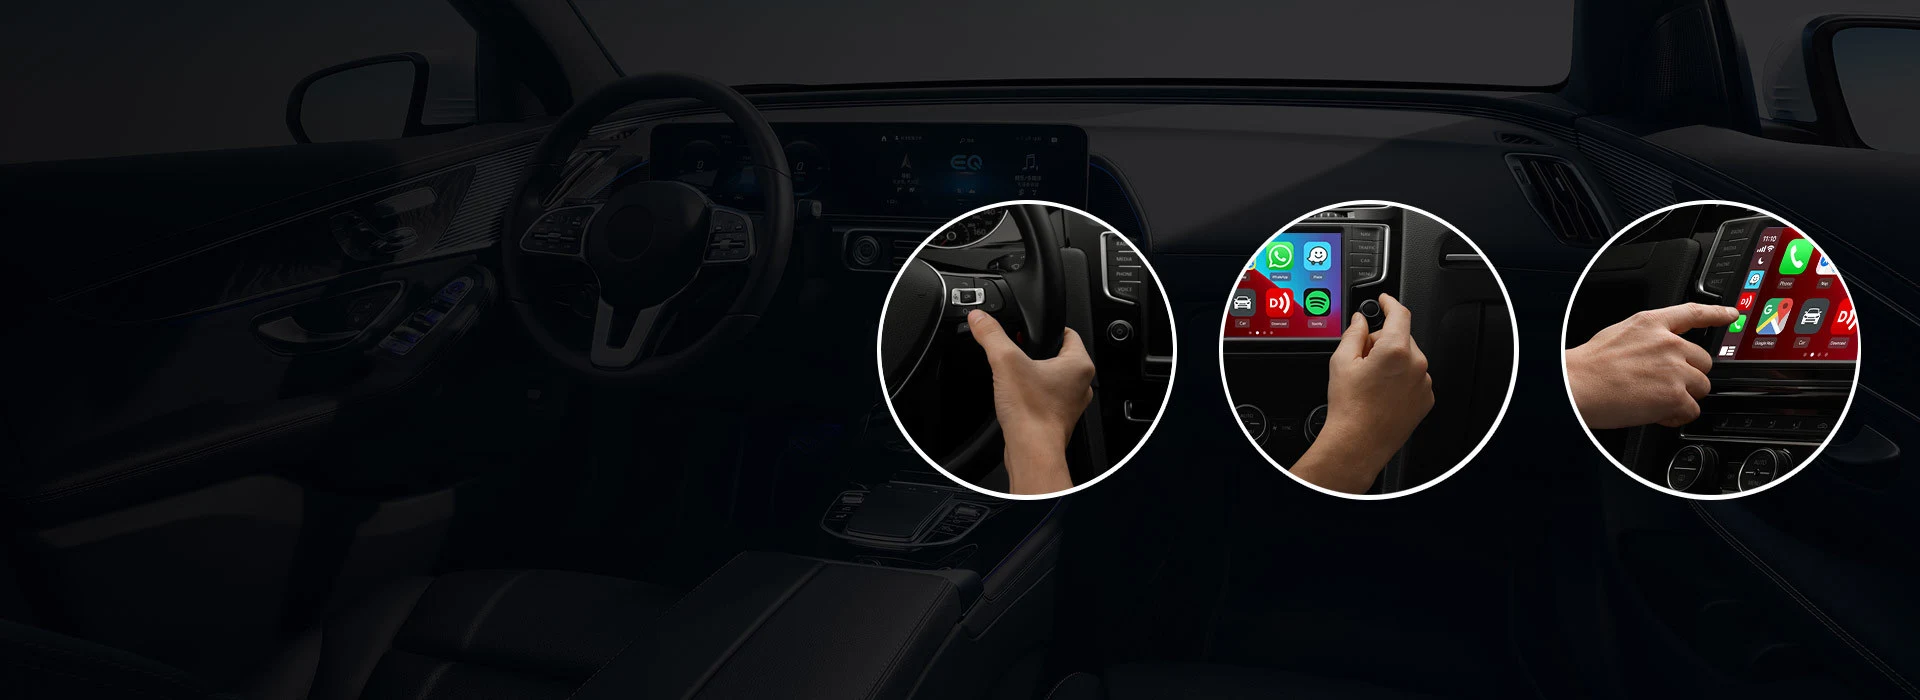 Carlinkit 5.0 Upgrade Apple Carplay không dây- Android Auto không dây cho xe hơi